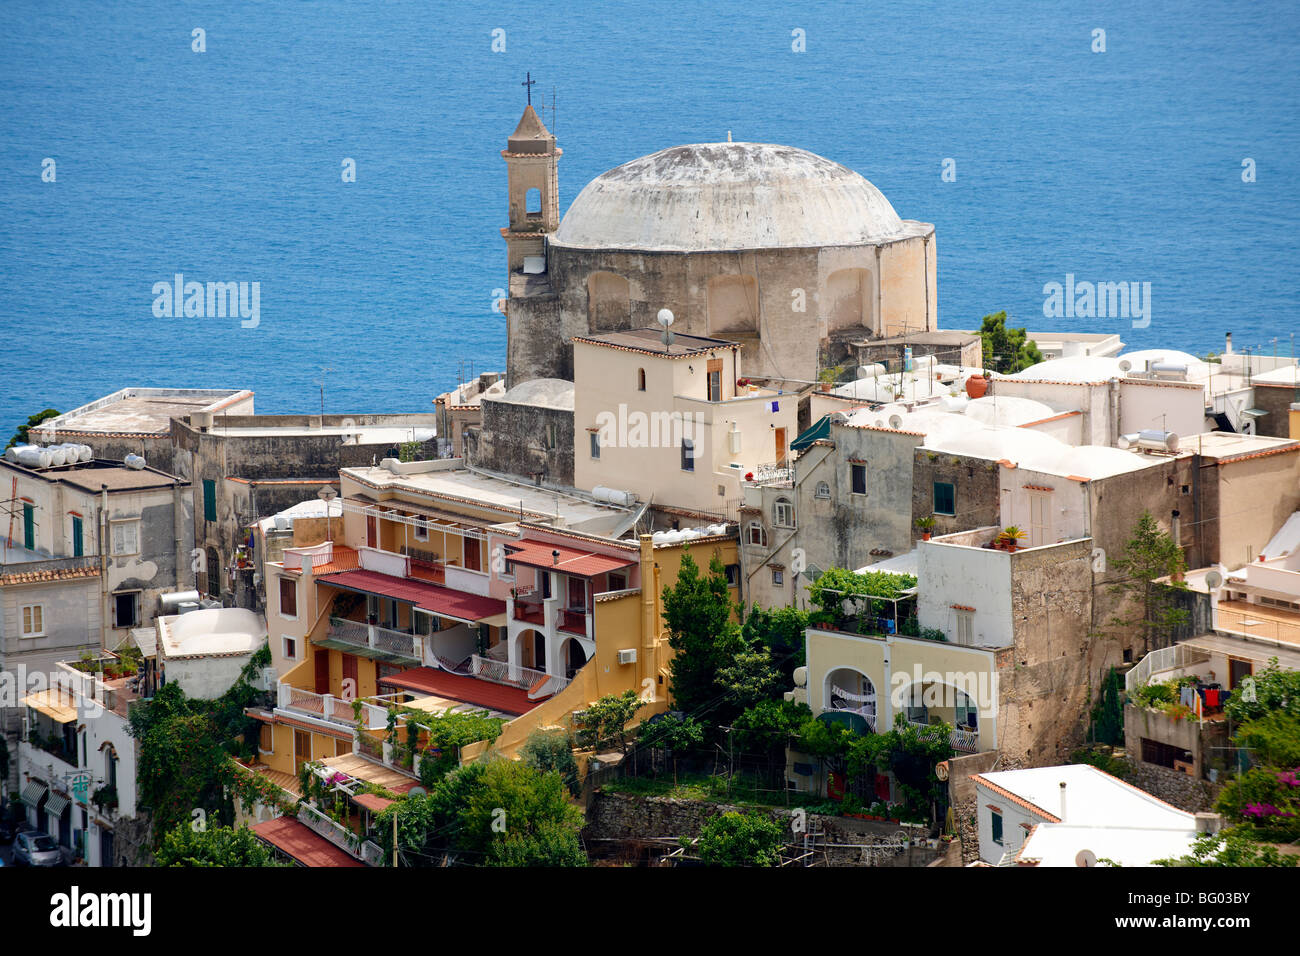 Le quartier balnéaire de Positano, Amalfi coast, Italie Banque D'Images